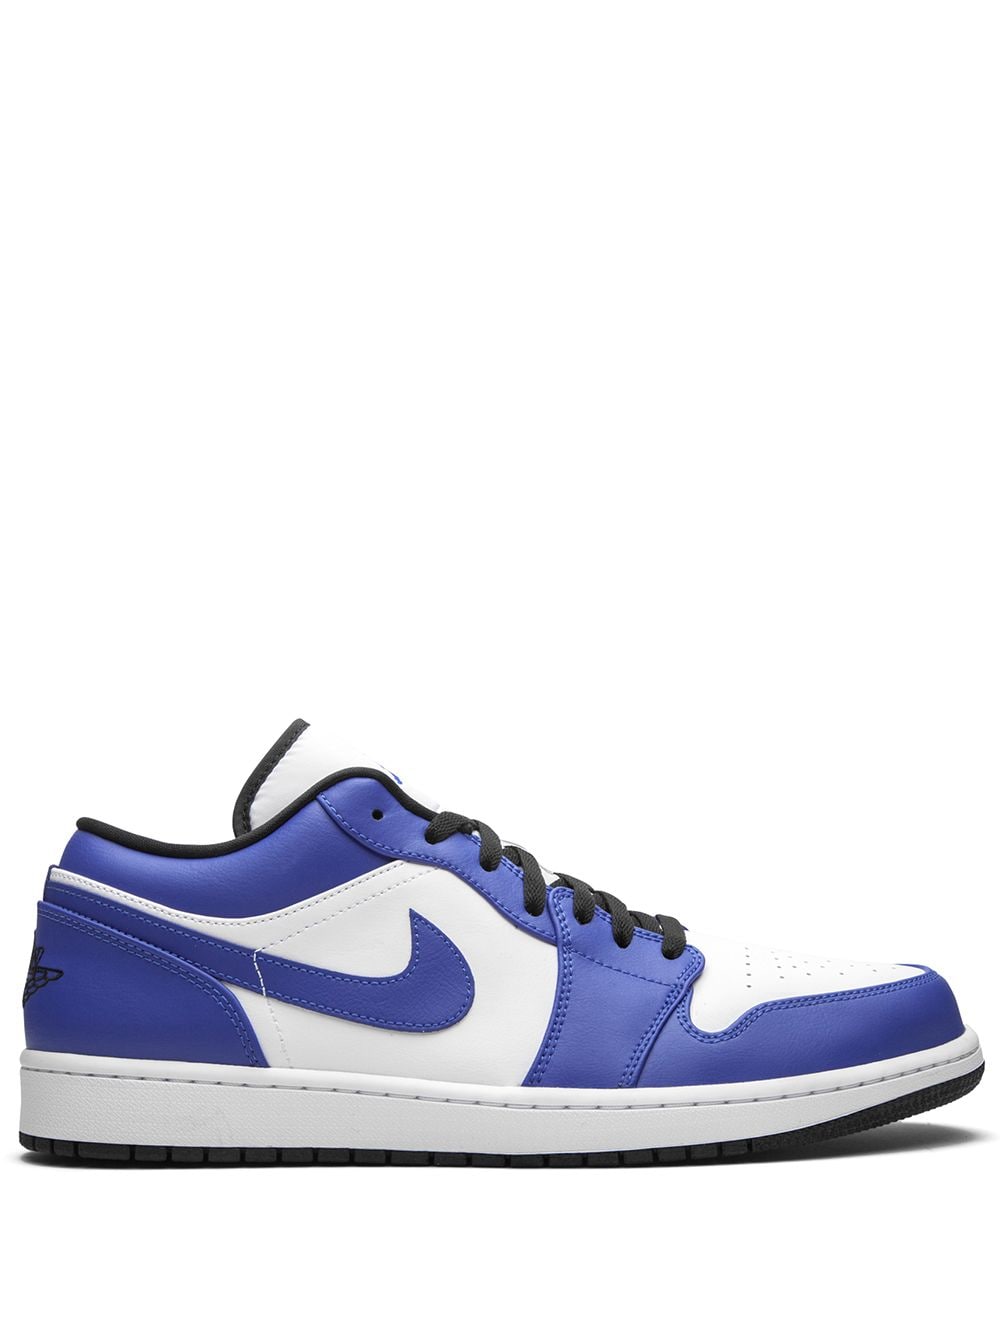 Jordan Air Jordan 1 Low "Game Royal" sneakers - Blue von Jordan